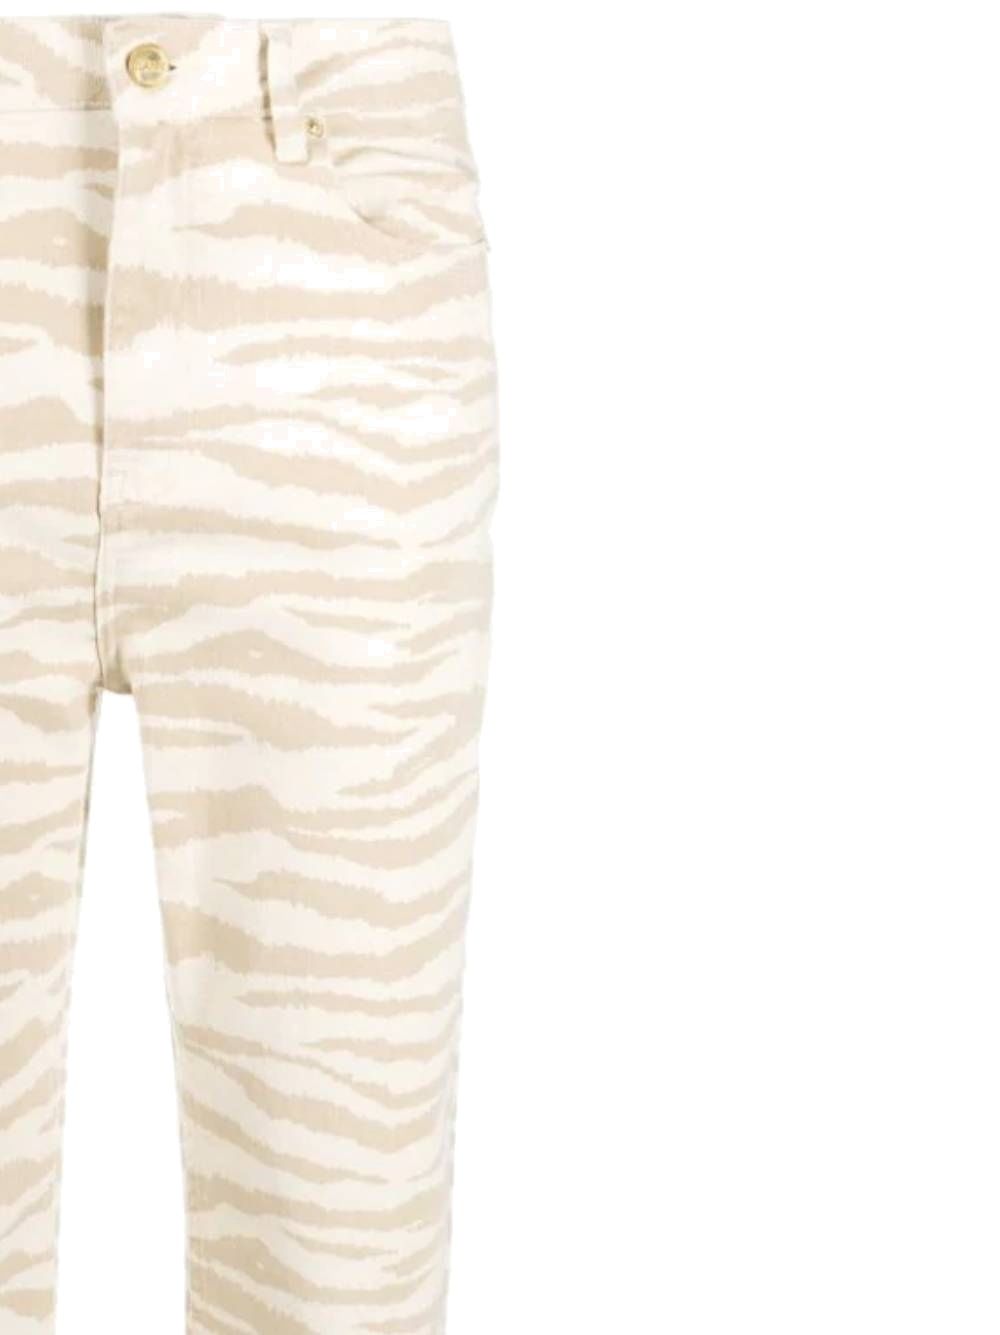 Swigy jeans with zebra print